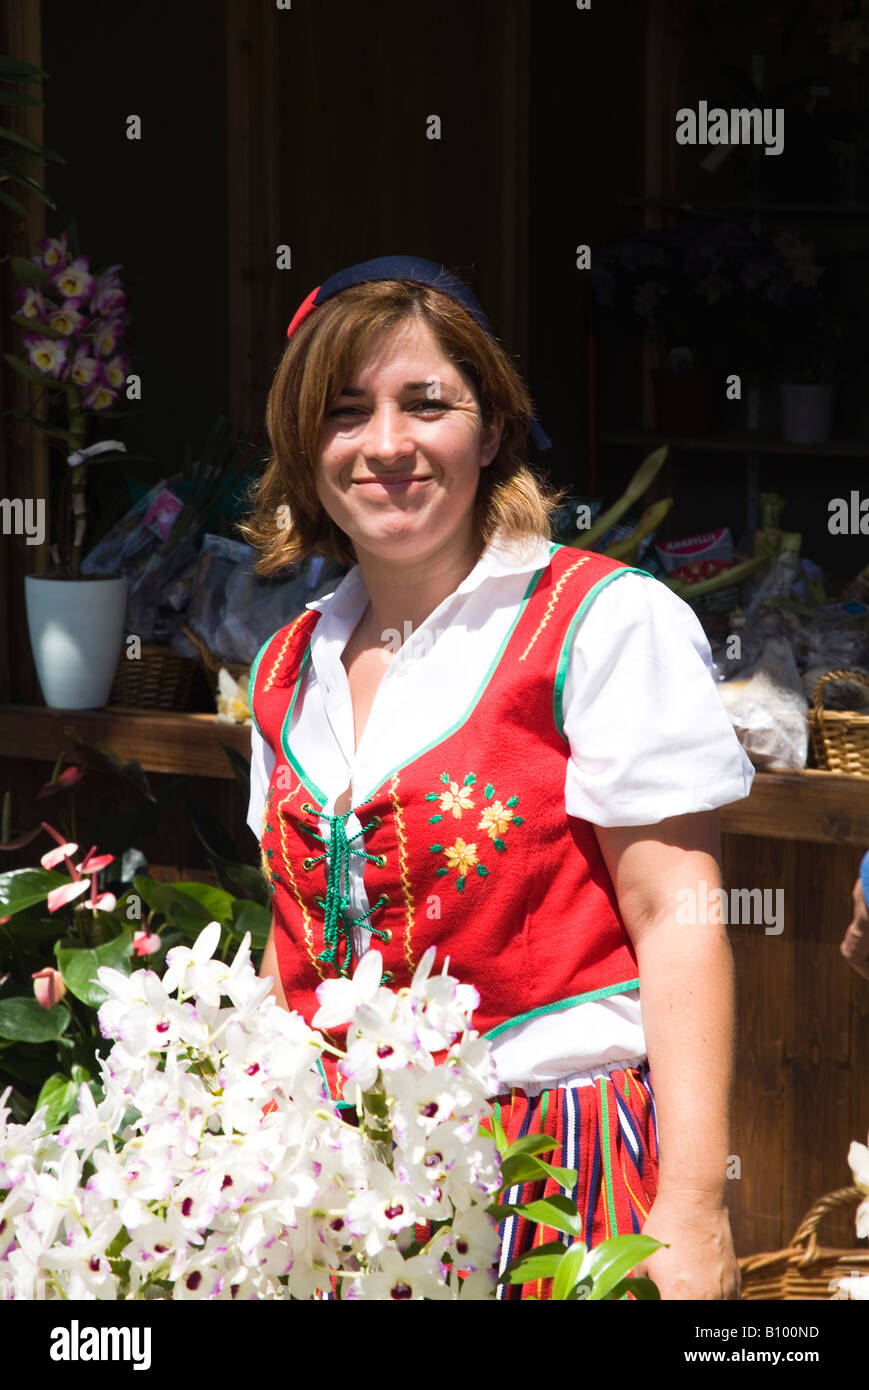 dh Blumenstand FUNCHAL MADEIRA Blumenverkäufer in traditionellem Kostüm Mädchengeschäft Verkäufer Markt Vender Frau Blumen Stallholder portugal Stockfoto